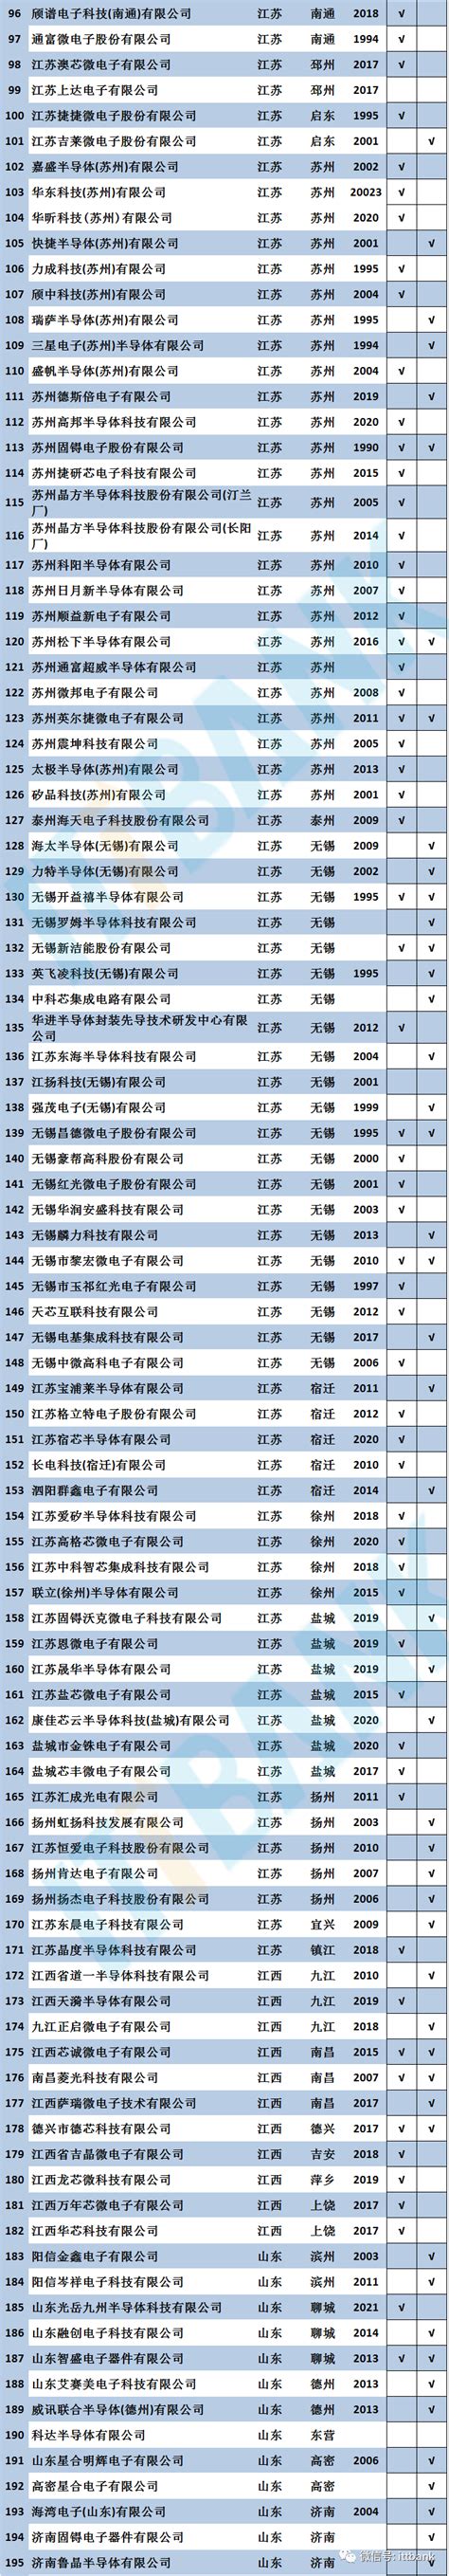 湖南电子科技职业学院2022年单独招生录取名单公示-通知公告-湖南电子科技职业学院